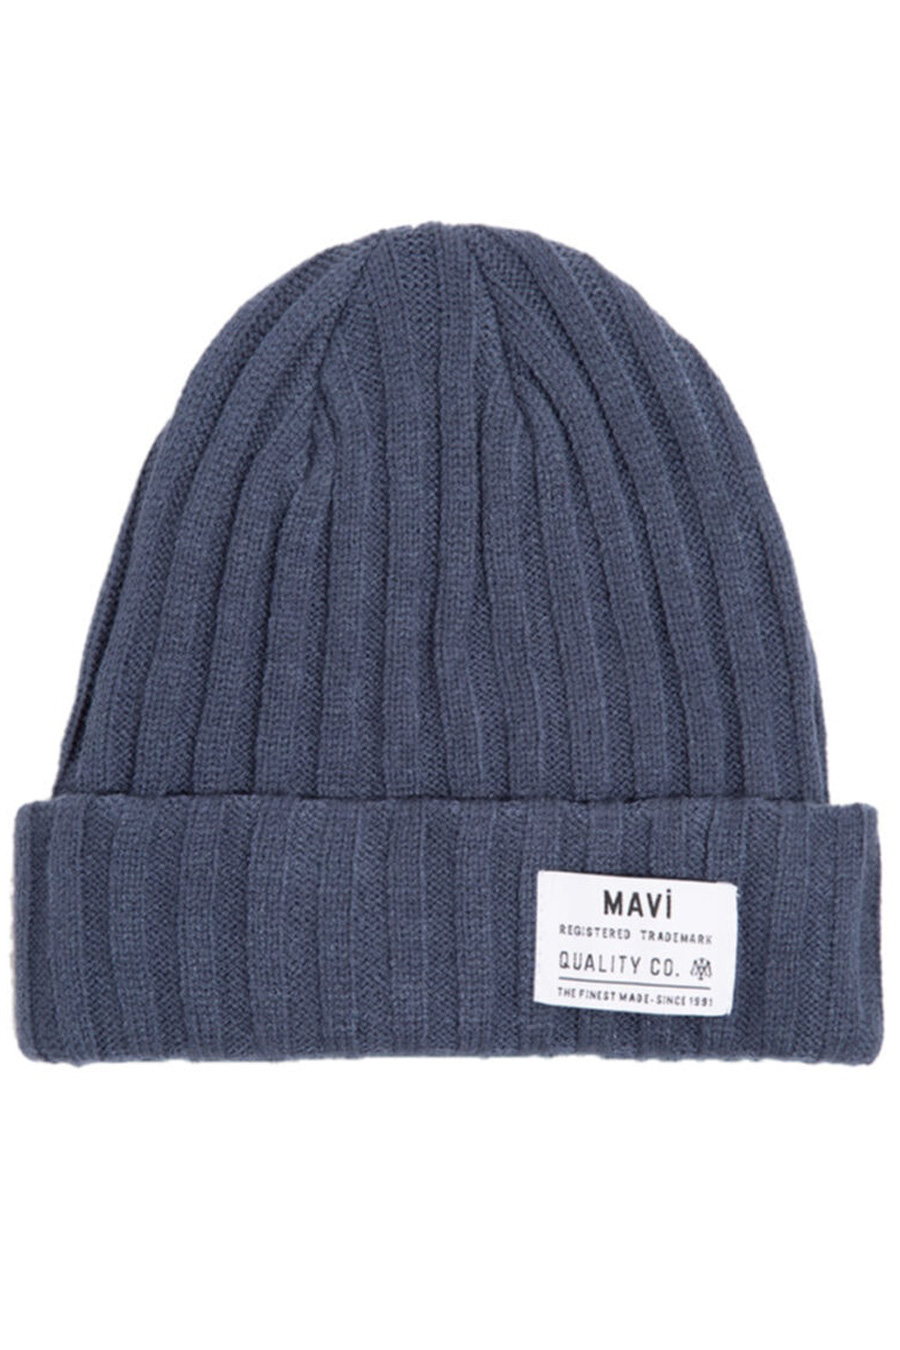 Žieminė kepurė MAVI 092809-34961